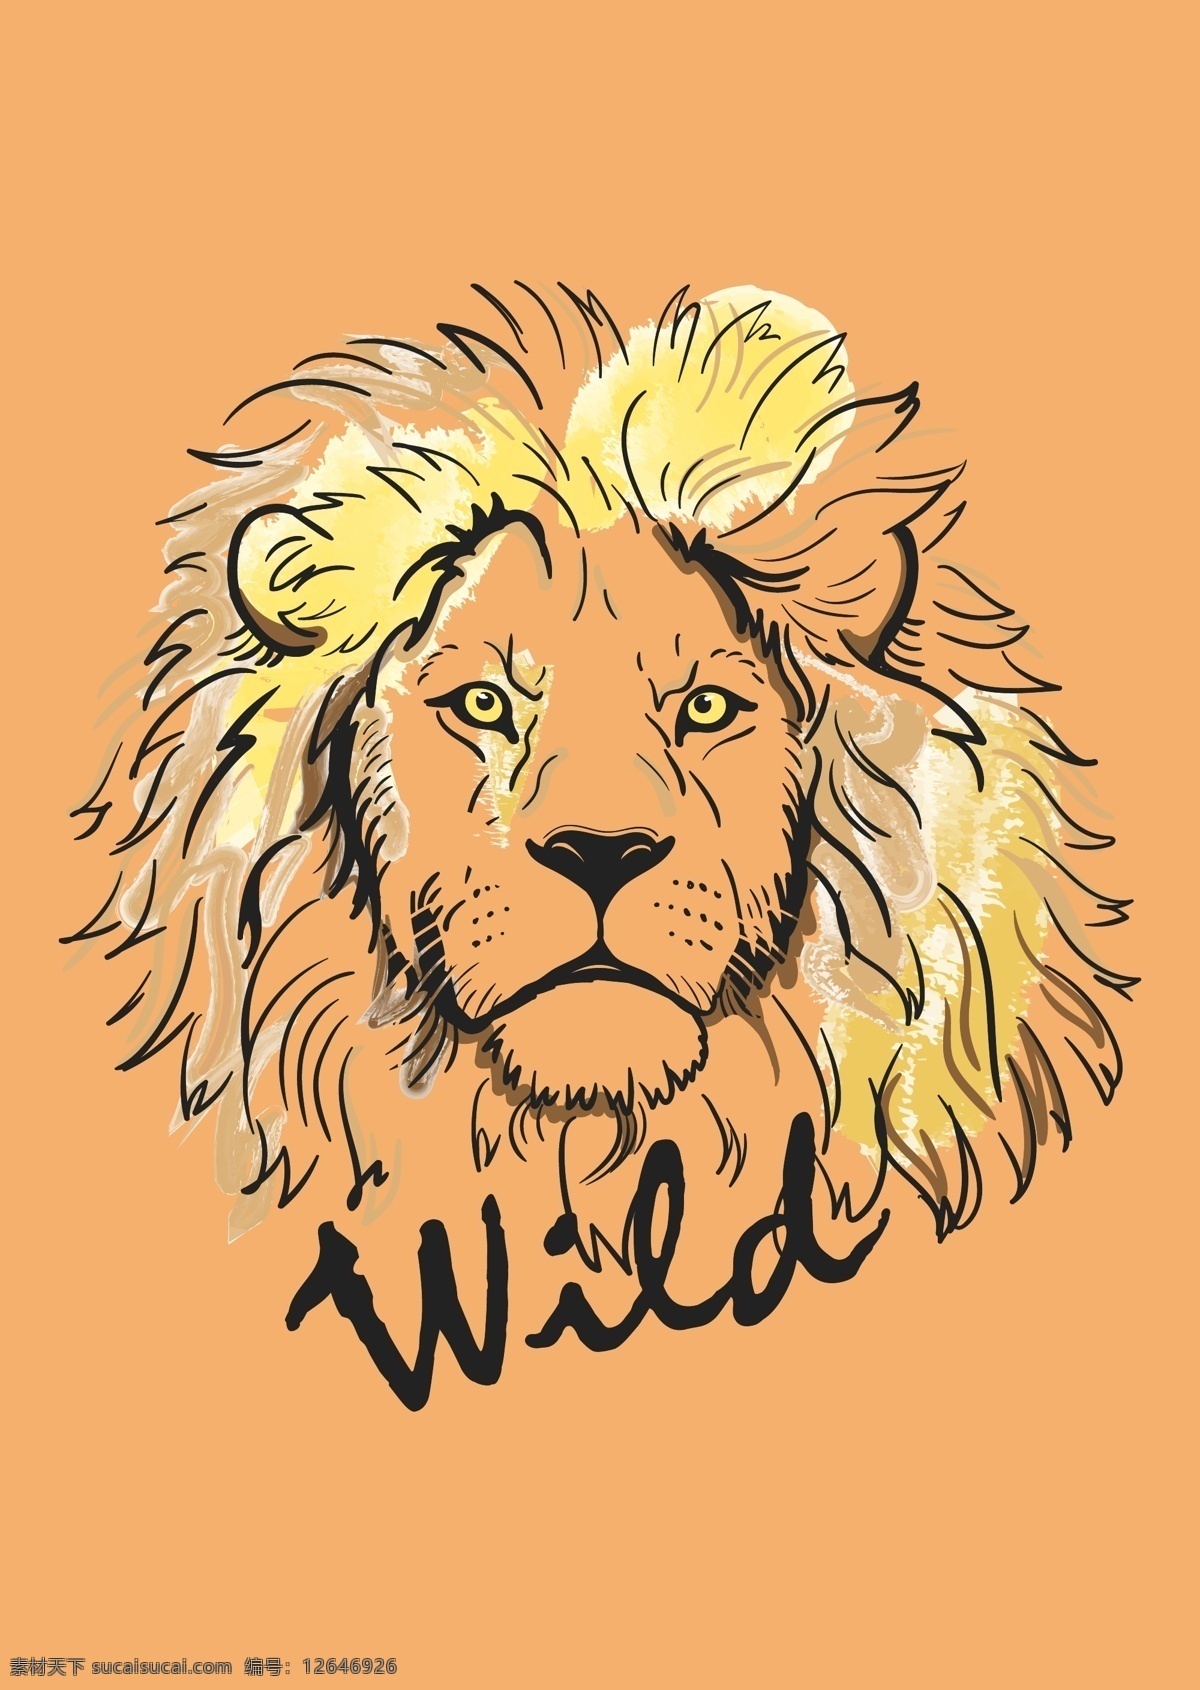 狮头 狮子矢量 手绘狮子 狮子素材 狮头矢量素材 野生动物 非洲狮 雄狮 狮子插画 手绘素描狮子 狮子王 动物矢量 生物世界